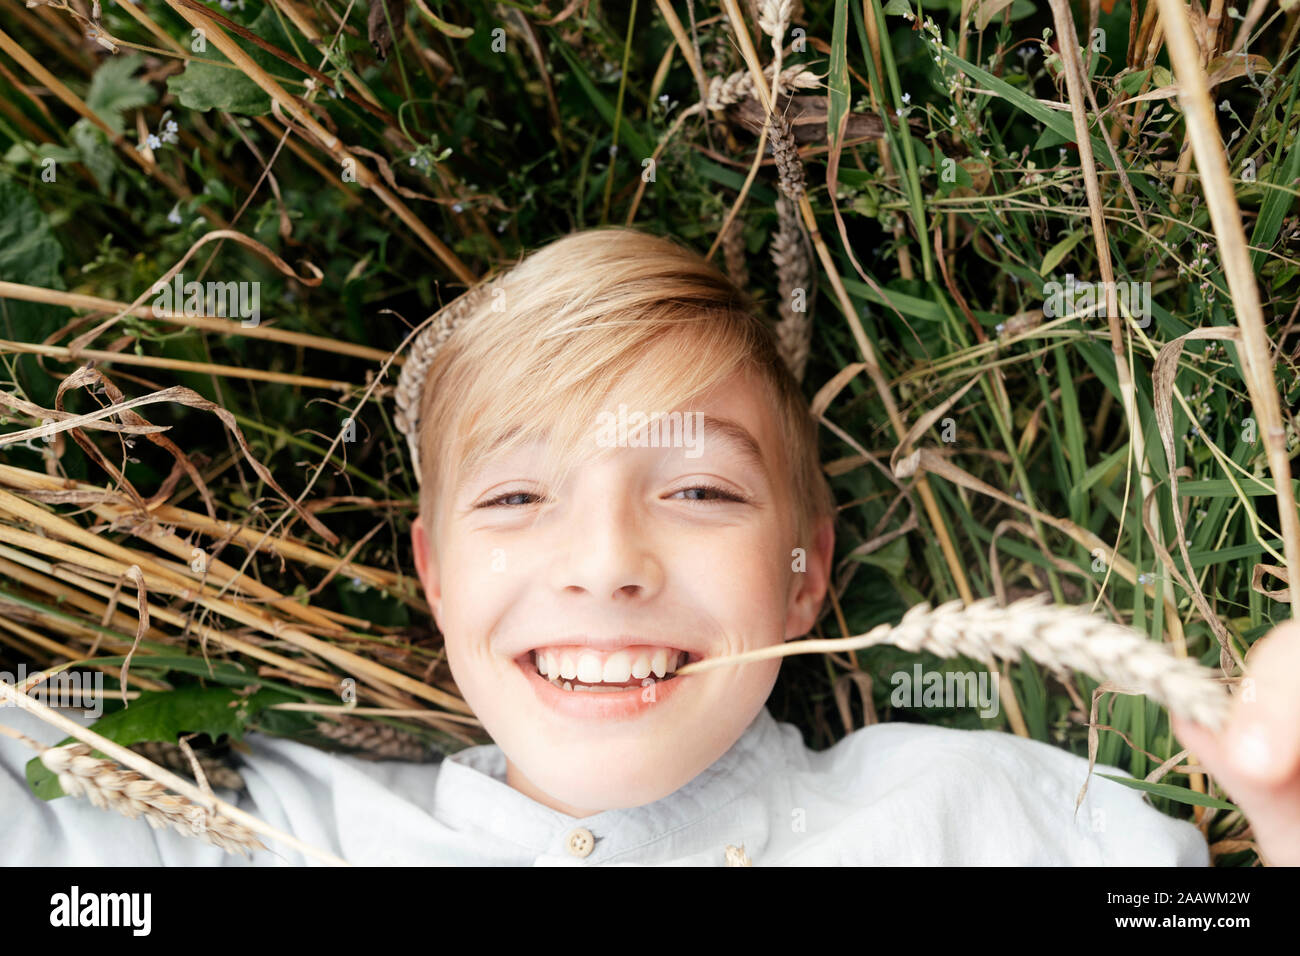 Portrait von lächelnden blonde Junge mit oat Ohr im Mund liegen in einem oat Feld Stockfoto